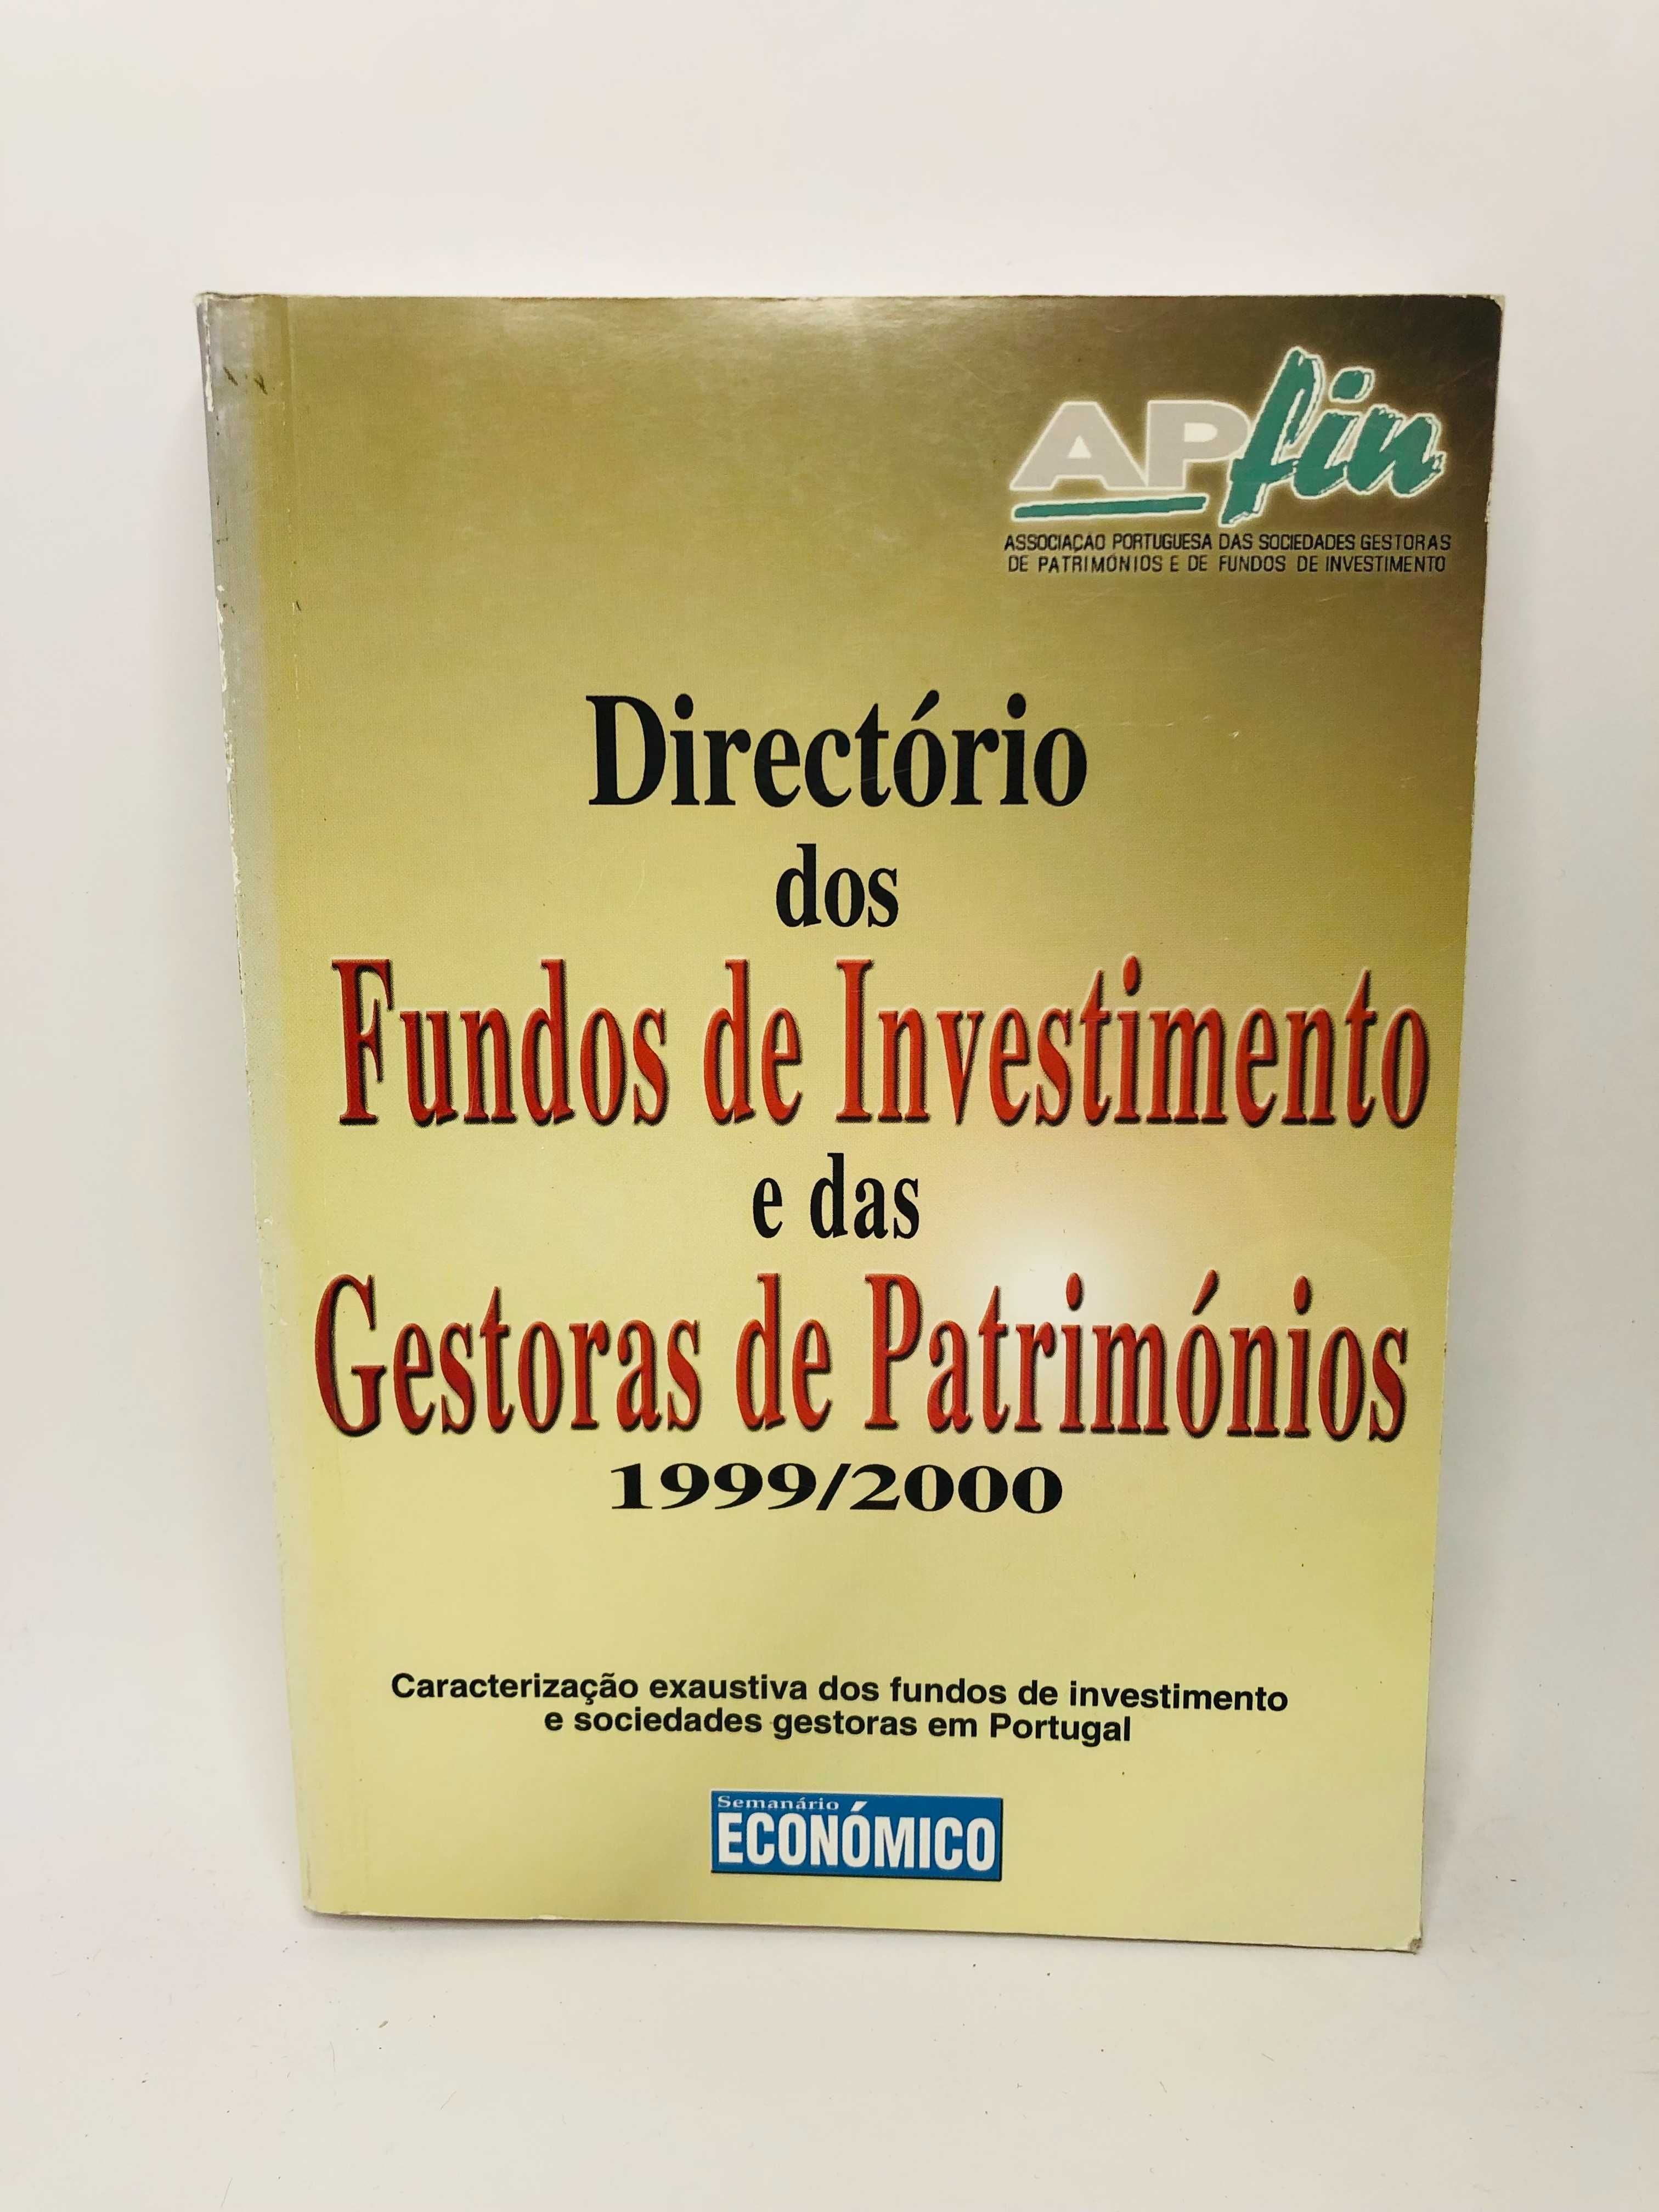 Directório dos Fundos de Investimento e das Gestoras de Patrimónios